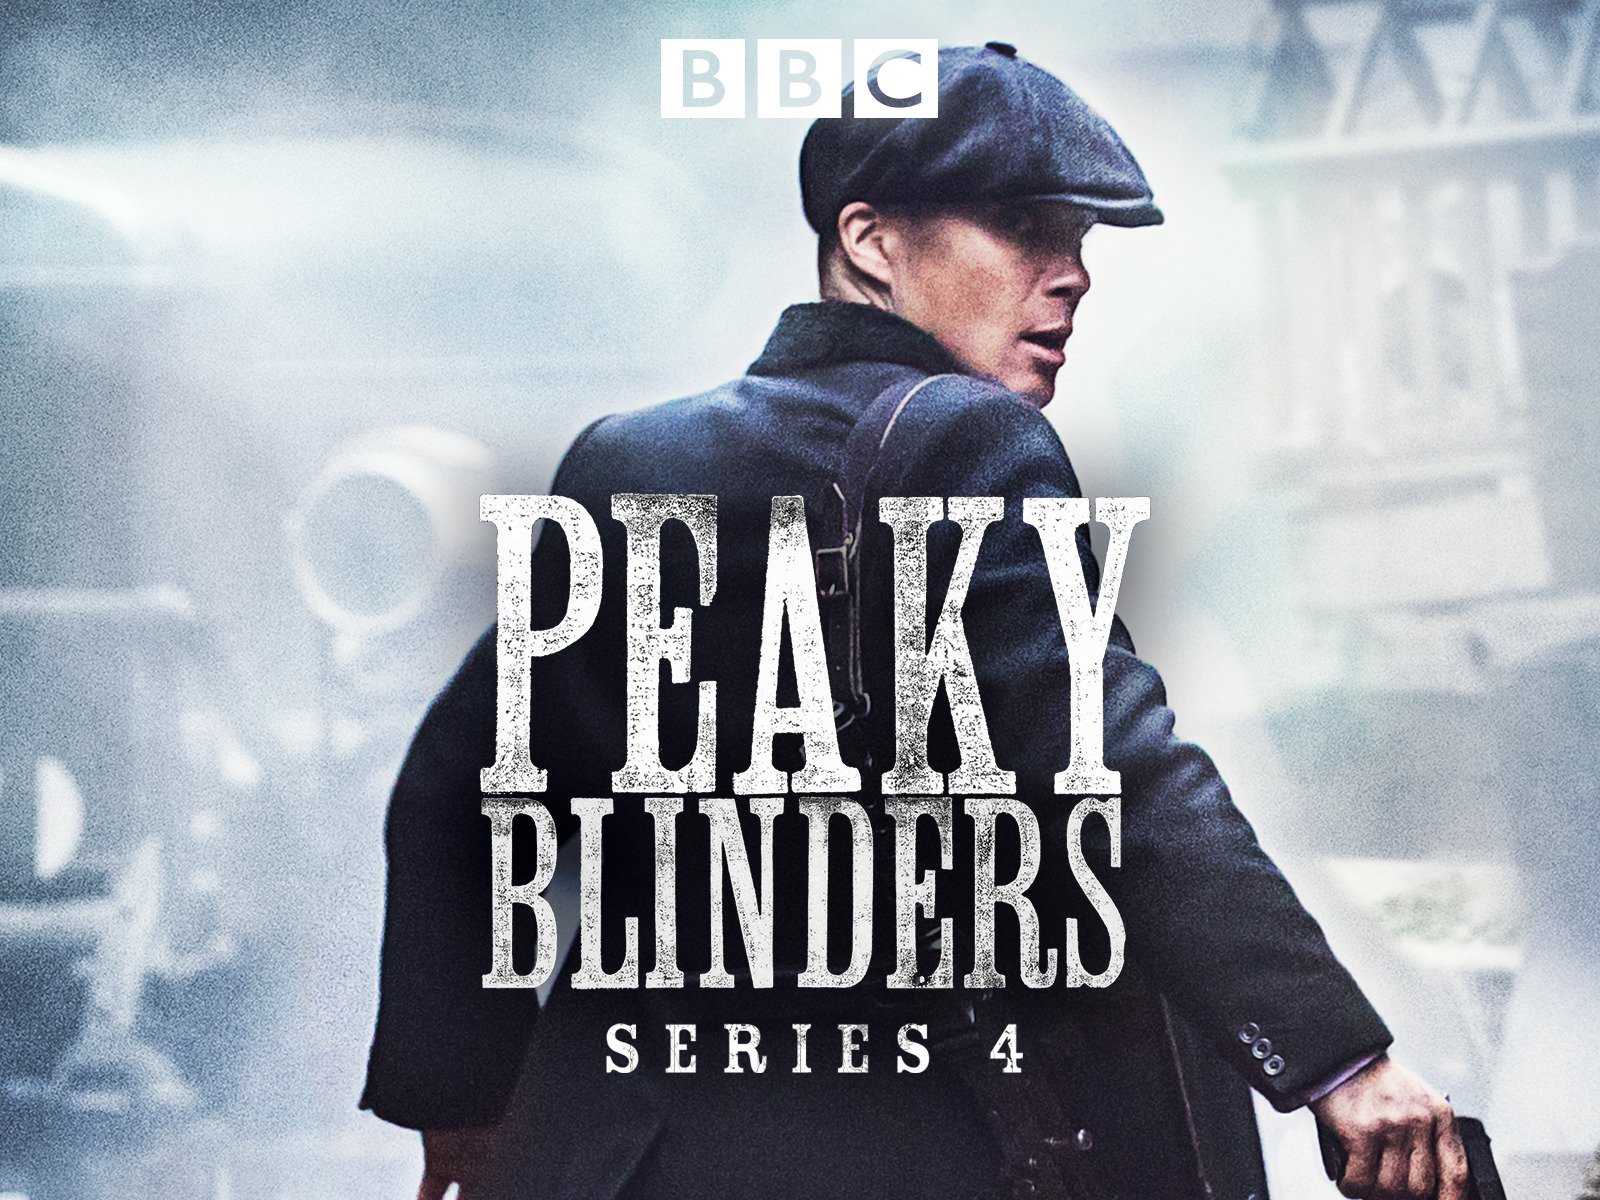 peaky blinders season 4 episode 3 stream